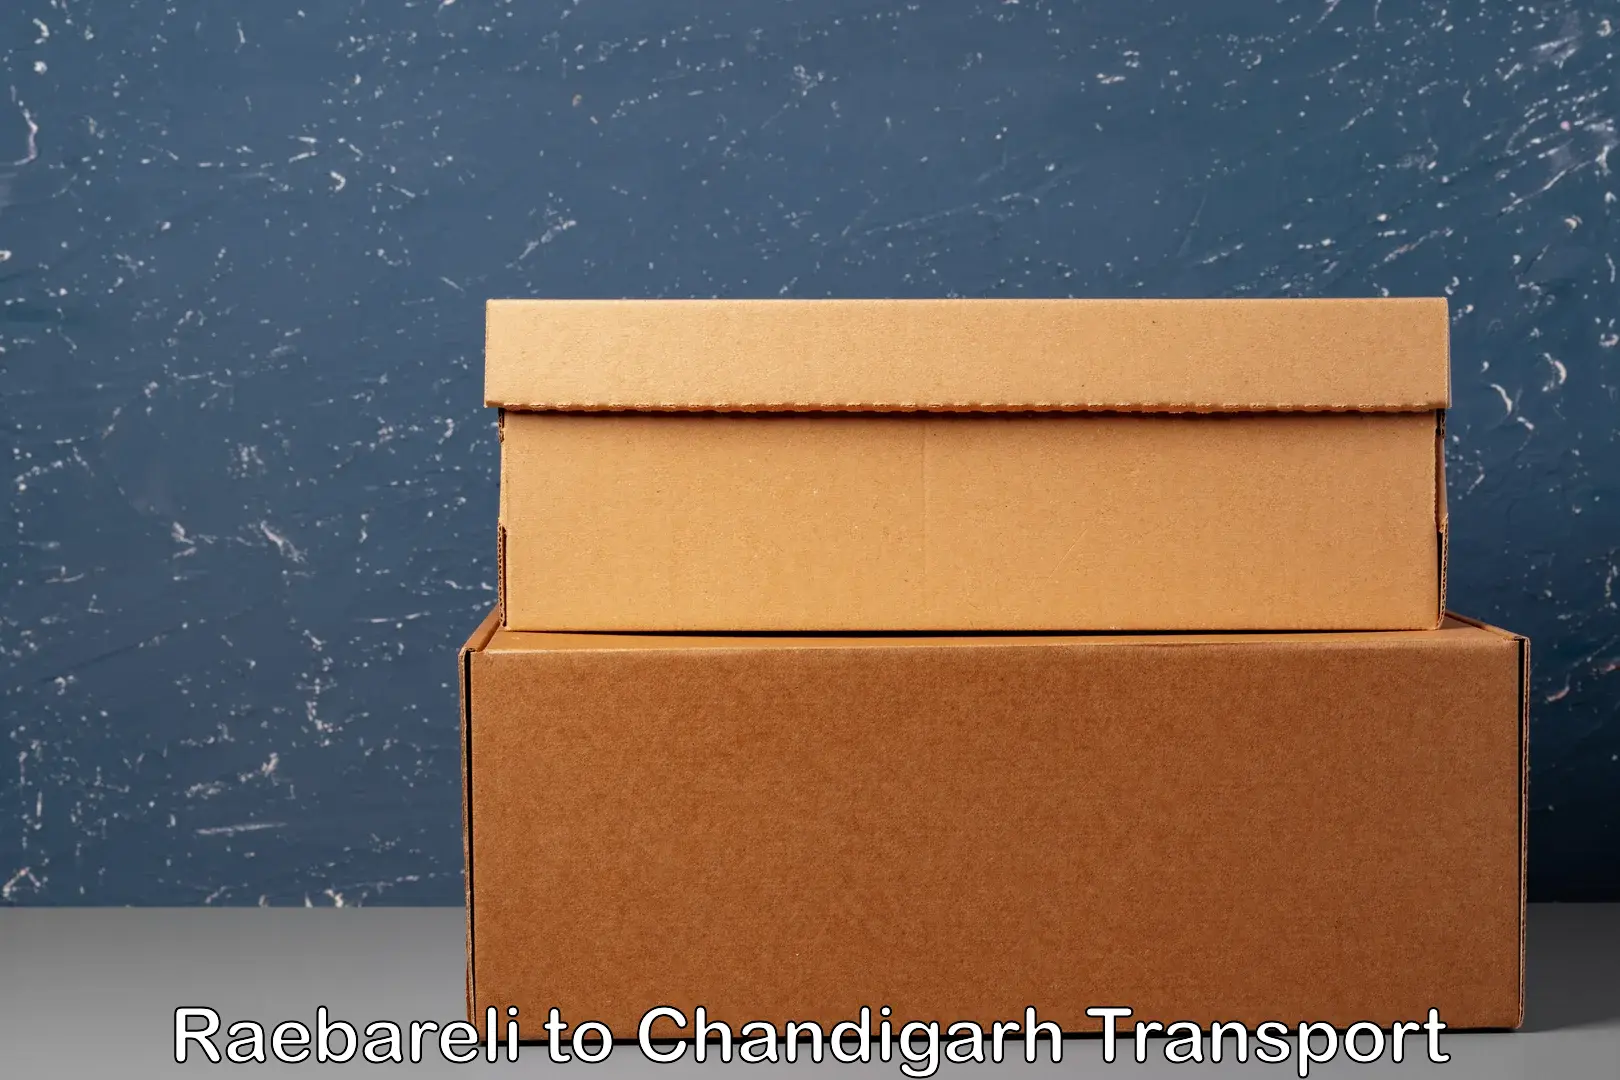 Shipping partner Raebareli to Chandigarh